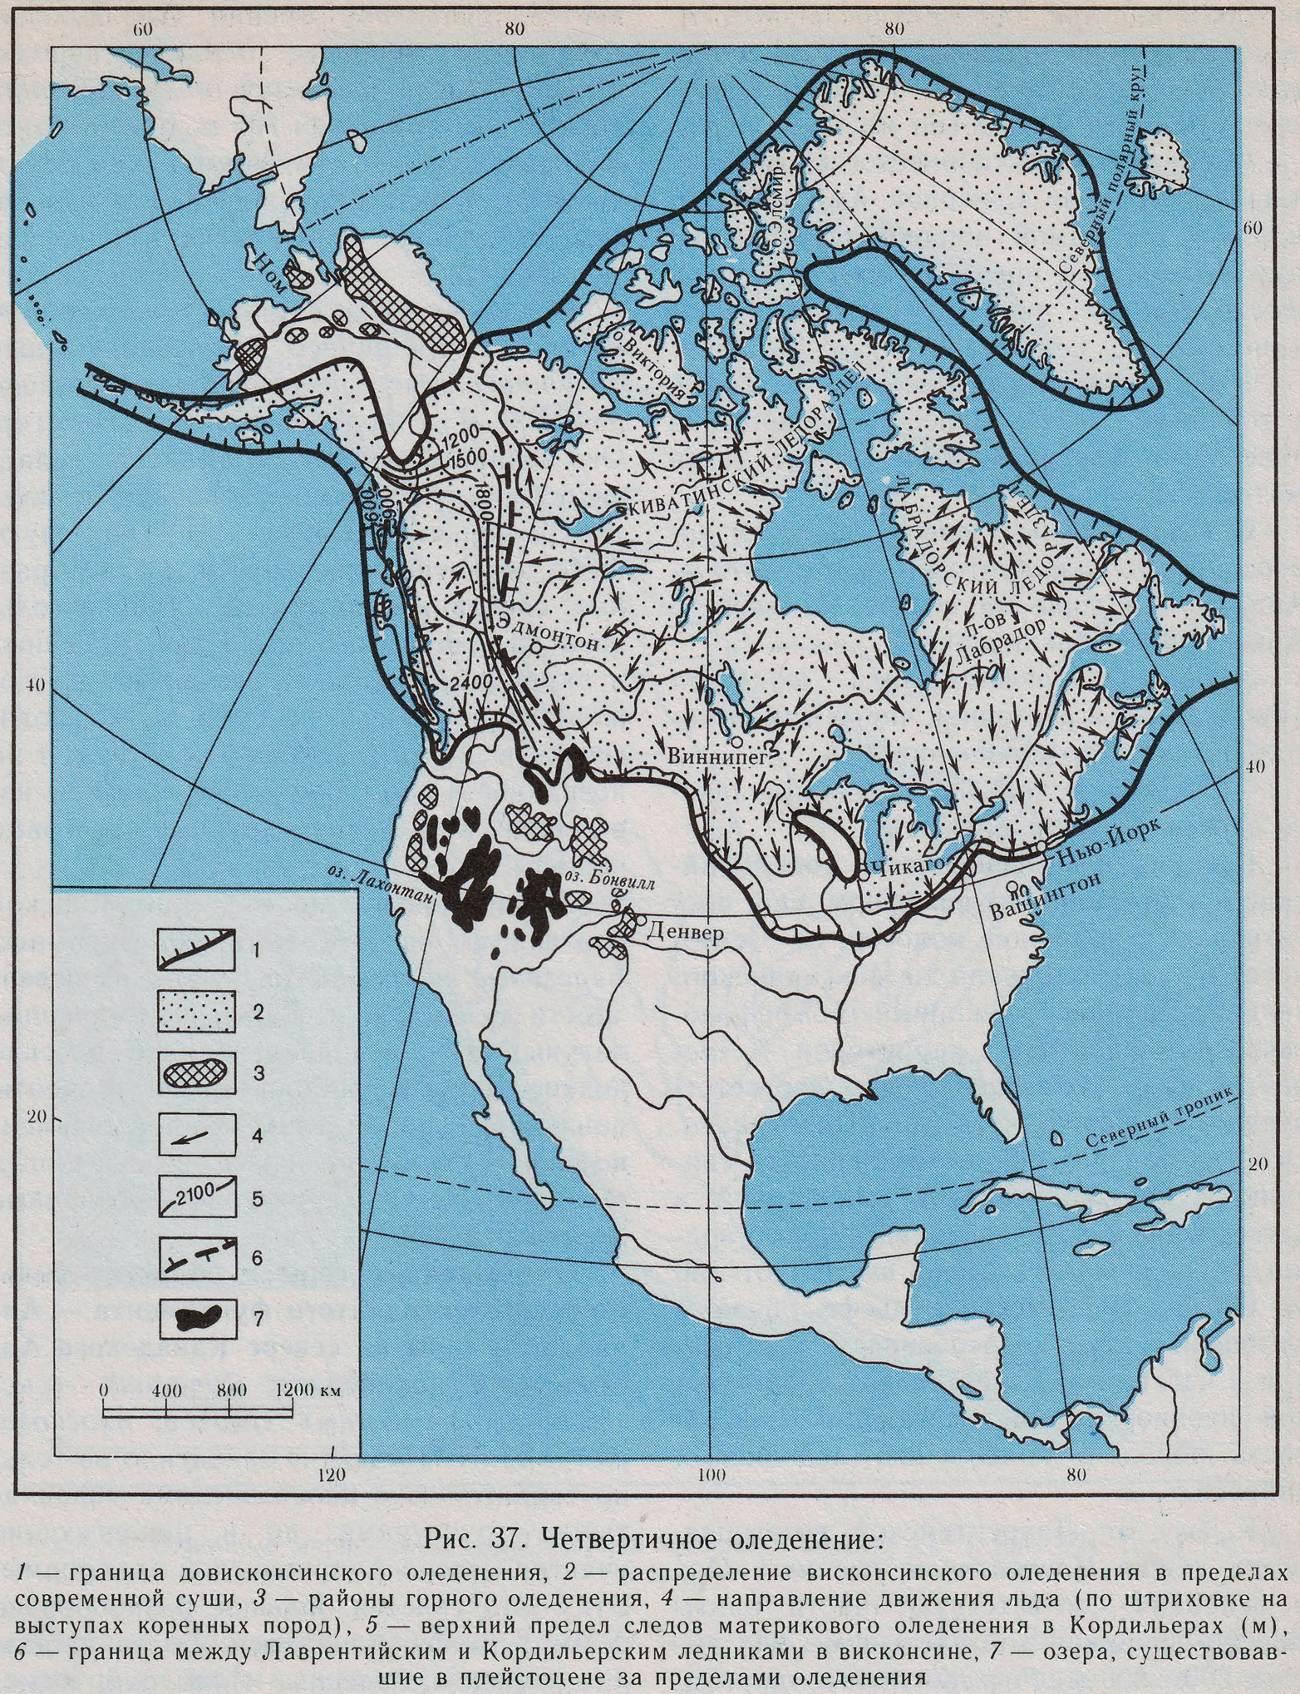 Полезные ископаемые северной америки на контурной карте. Карта четвертичное оледенение Северной Америки. Ледники Северной Америки на карте. Граница древнего оледенения Северной Америки. Четвертичное оледенение Северной Америки центры.